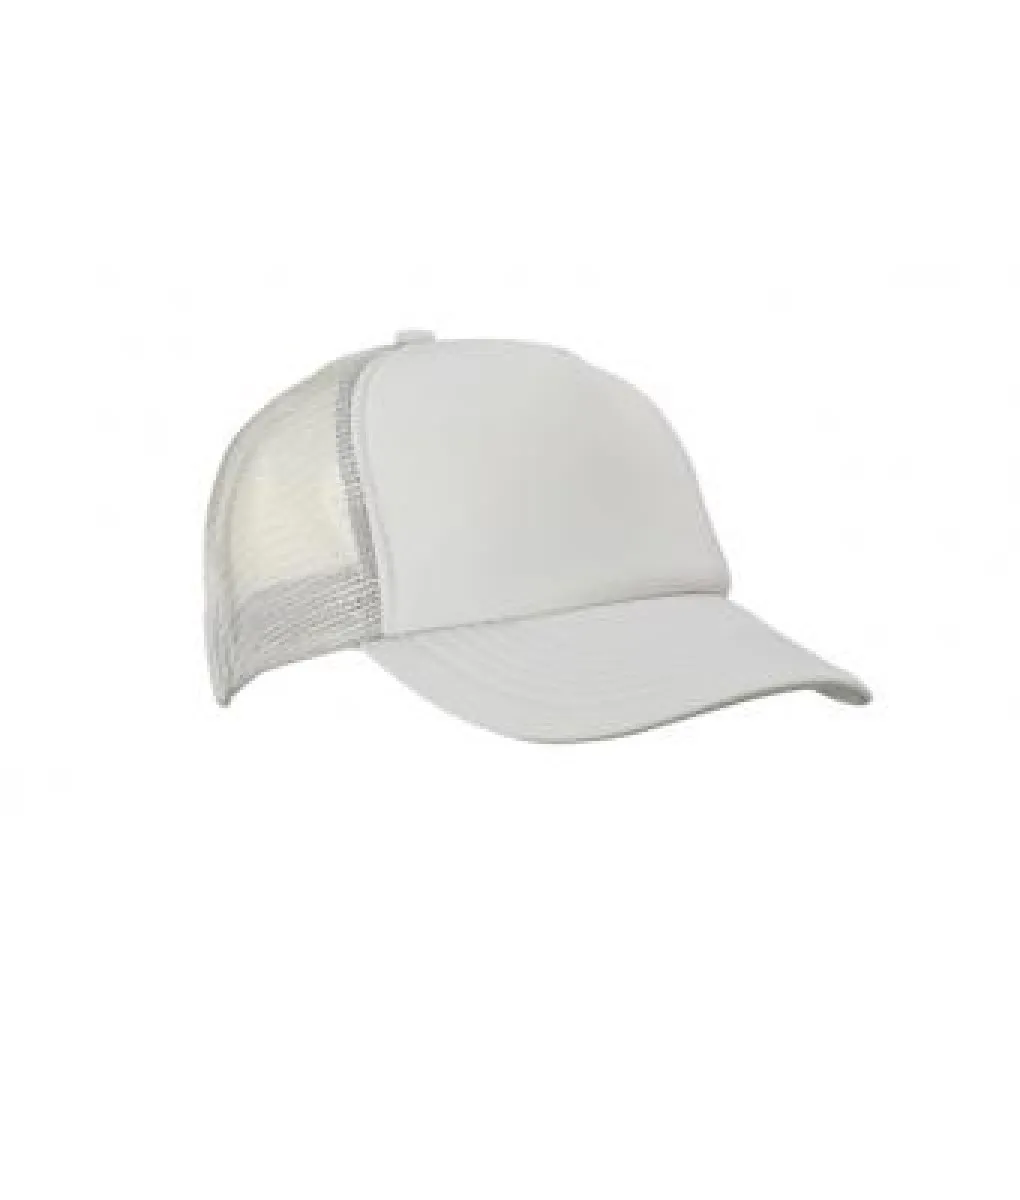 Brushed cotton cap - Kopie